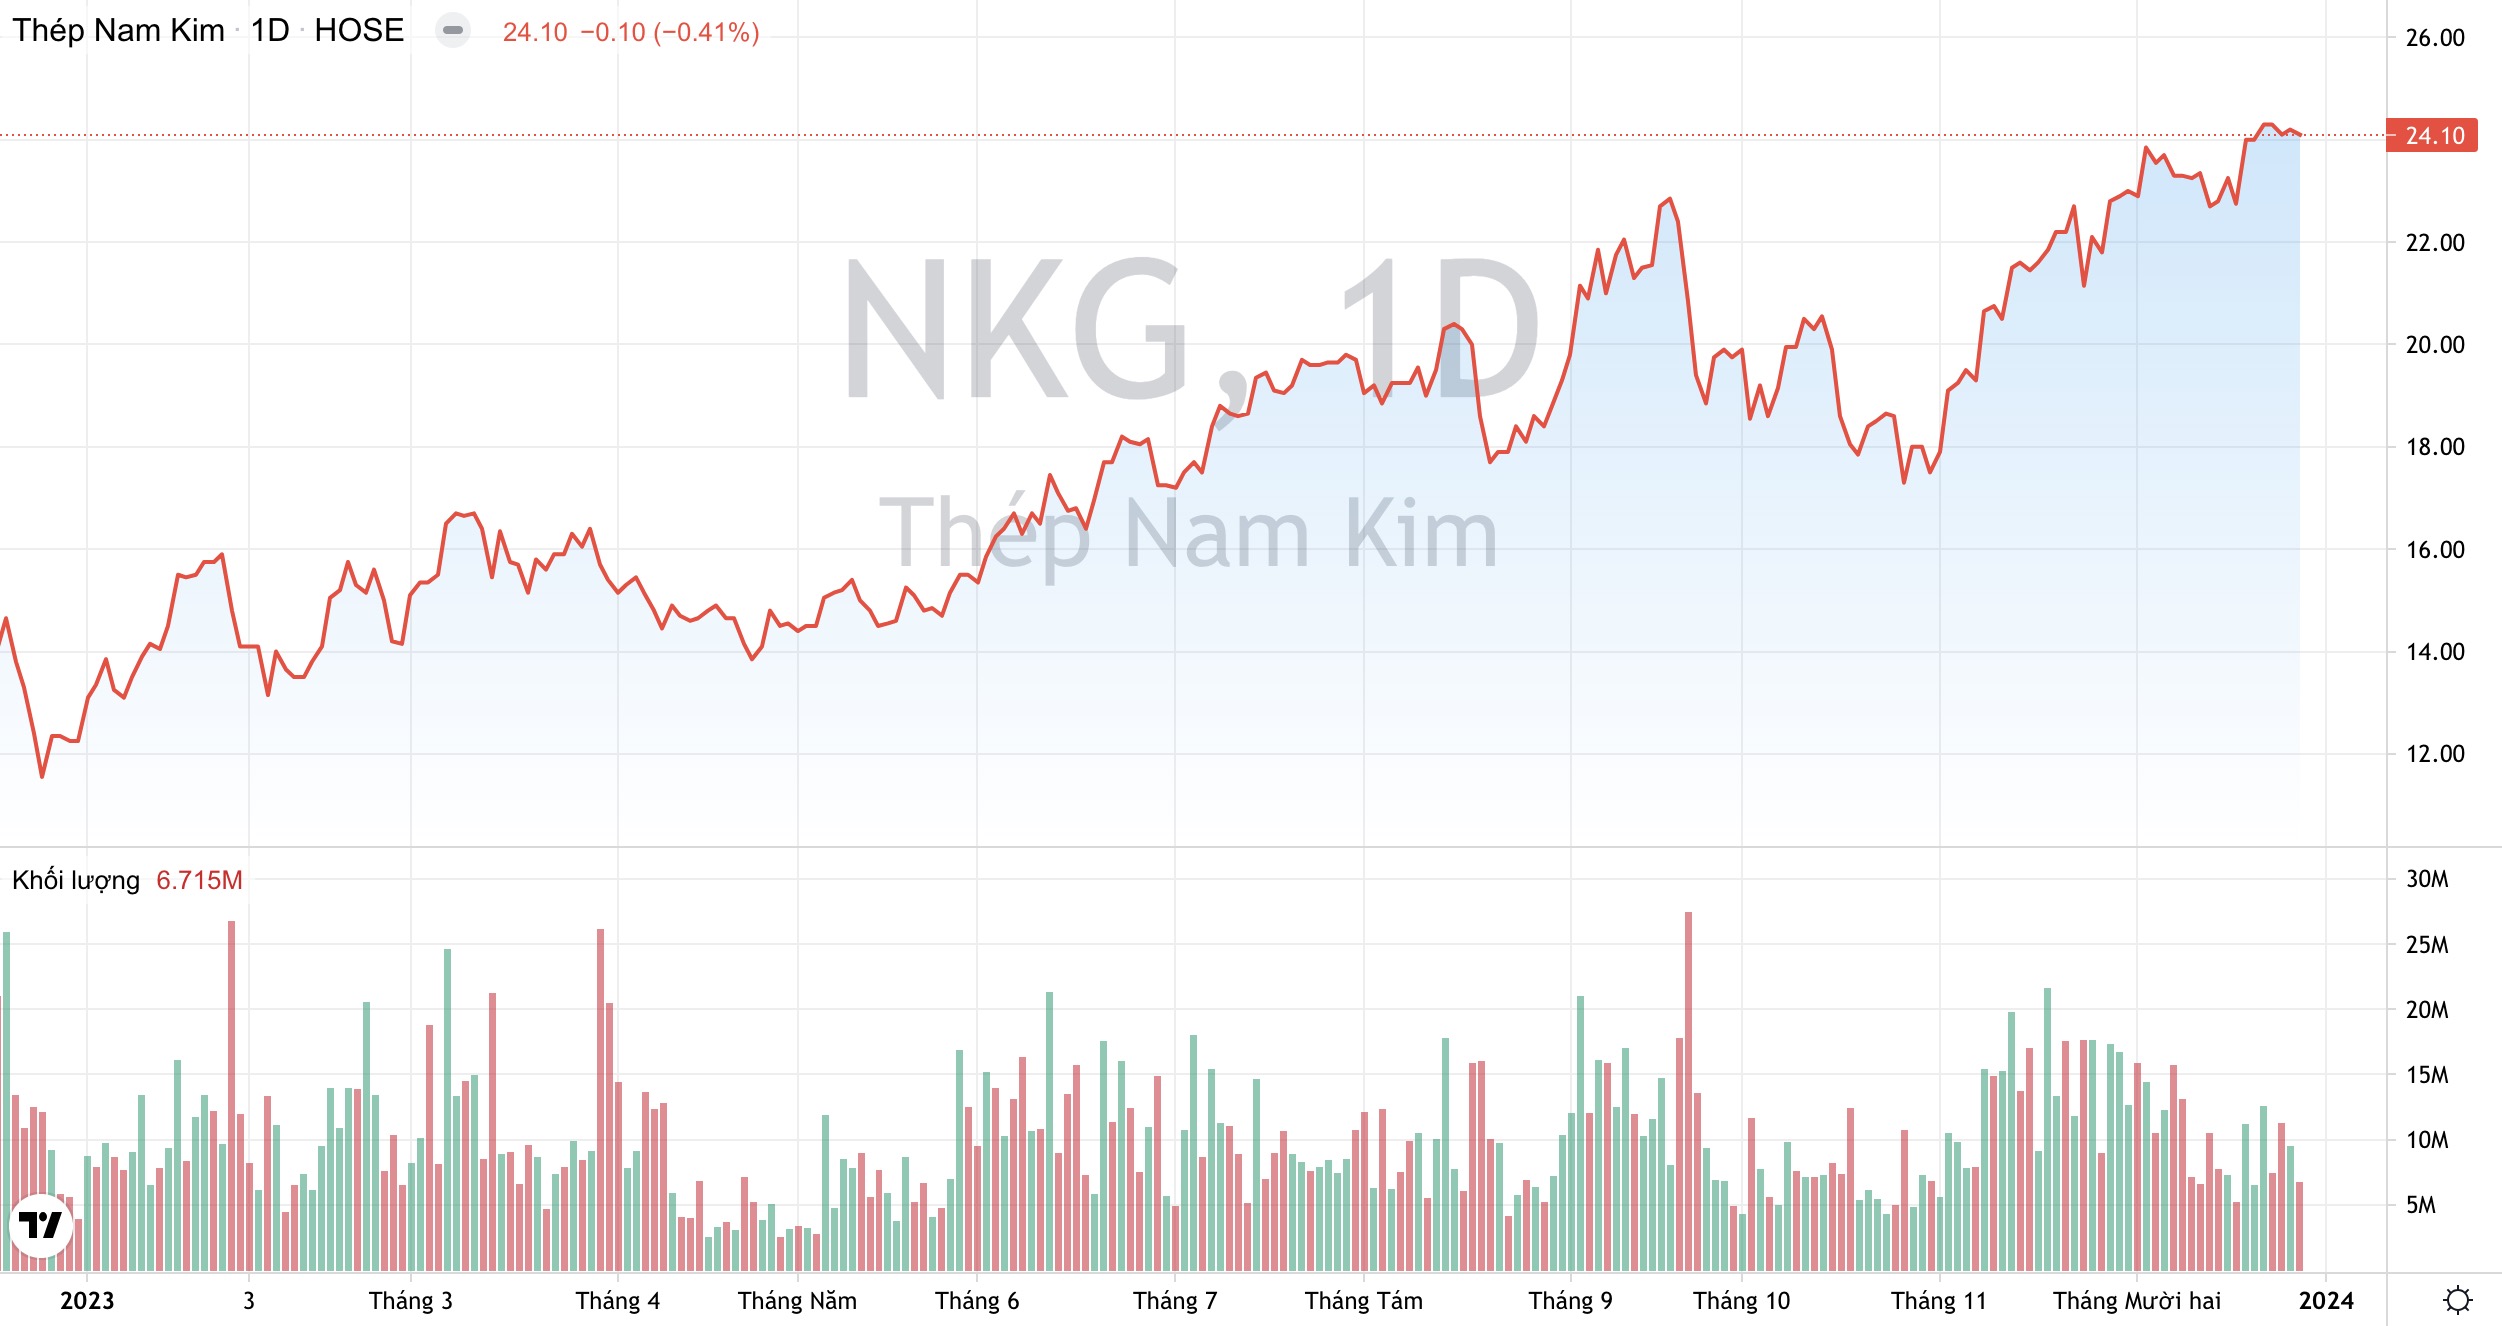 Dừng đầu tư vào Nhà máy Ống thép, Thép Nam Kim (NKG) muốn dồn lực cho mảng thép mạ cao cấp?